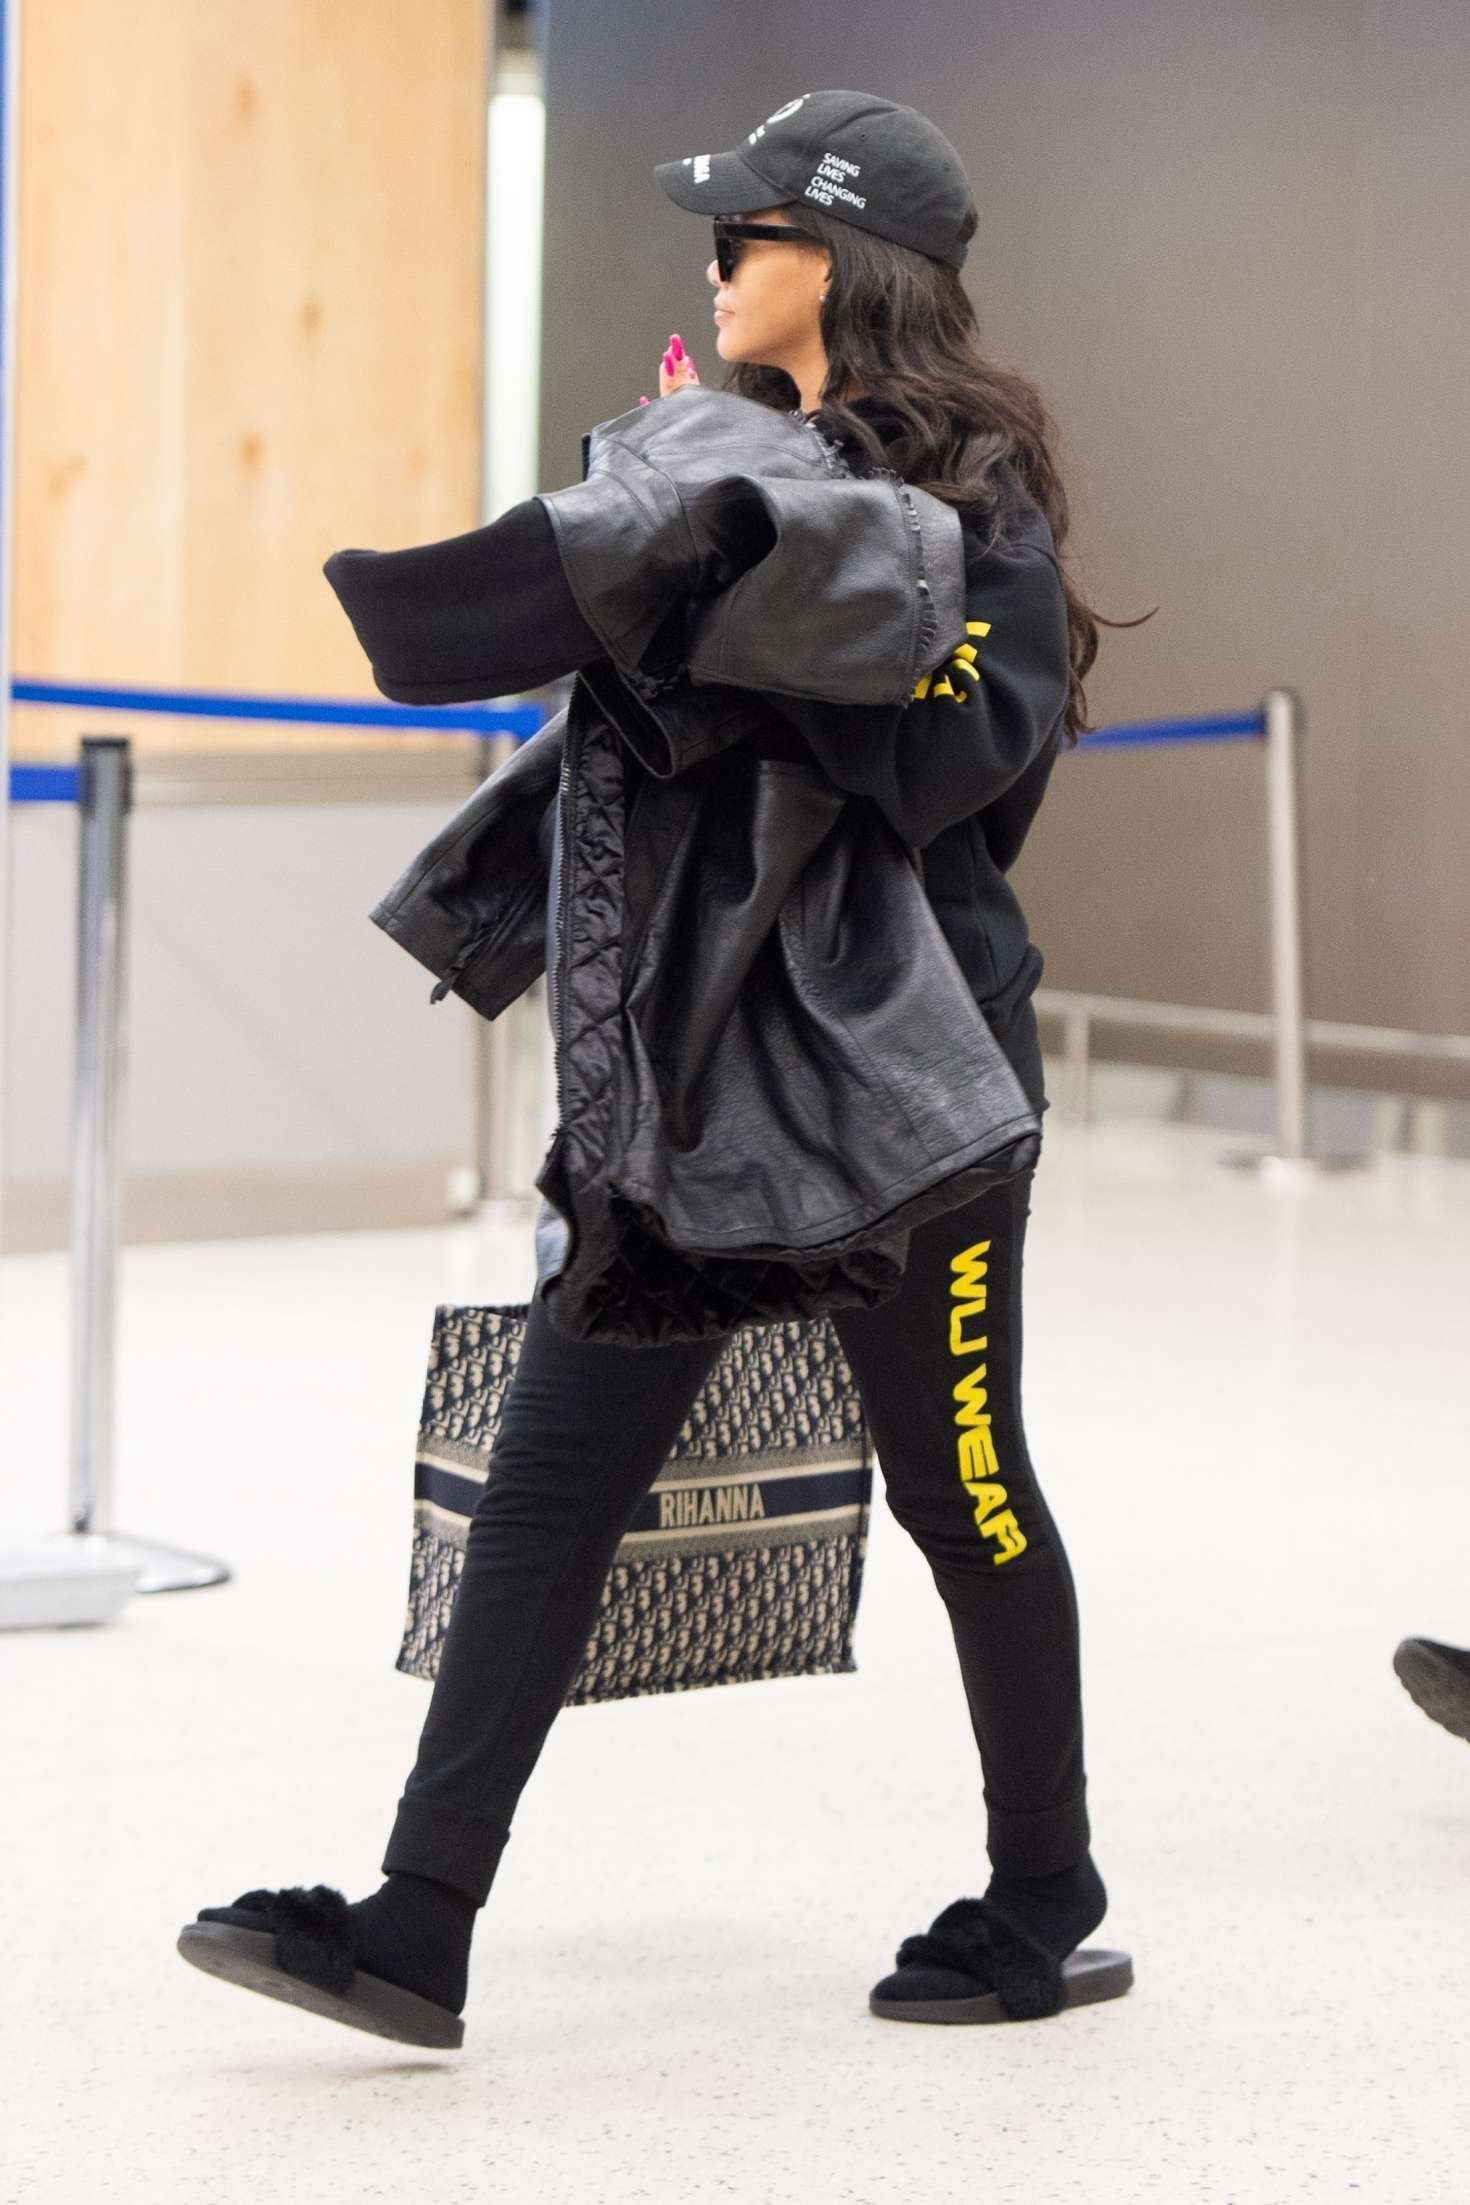 Rihanna at JFK Airport in NYC